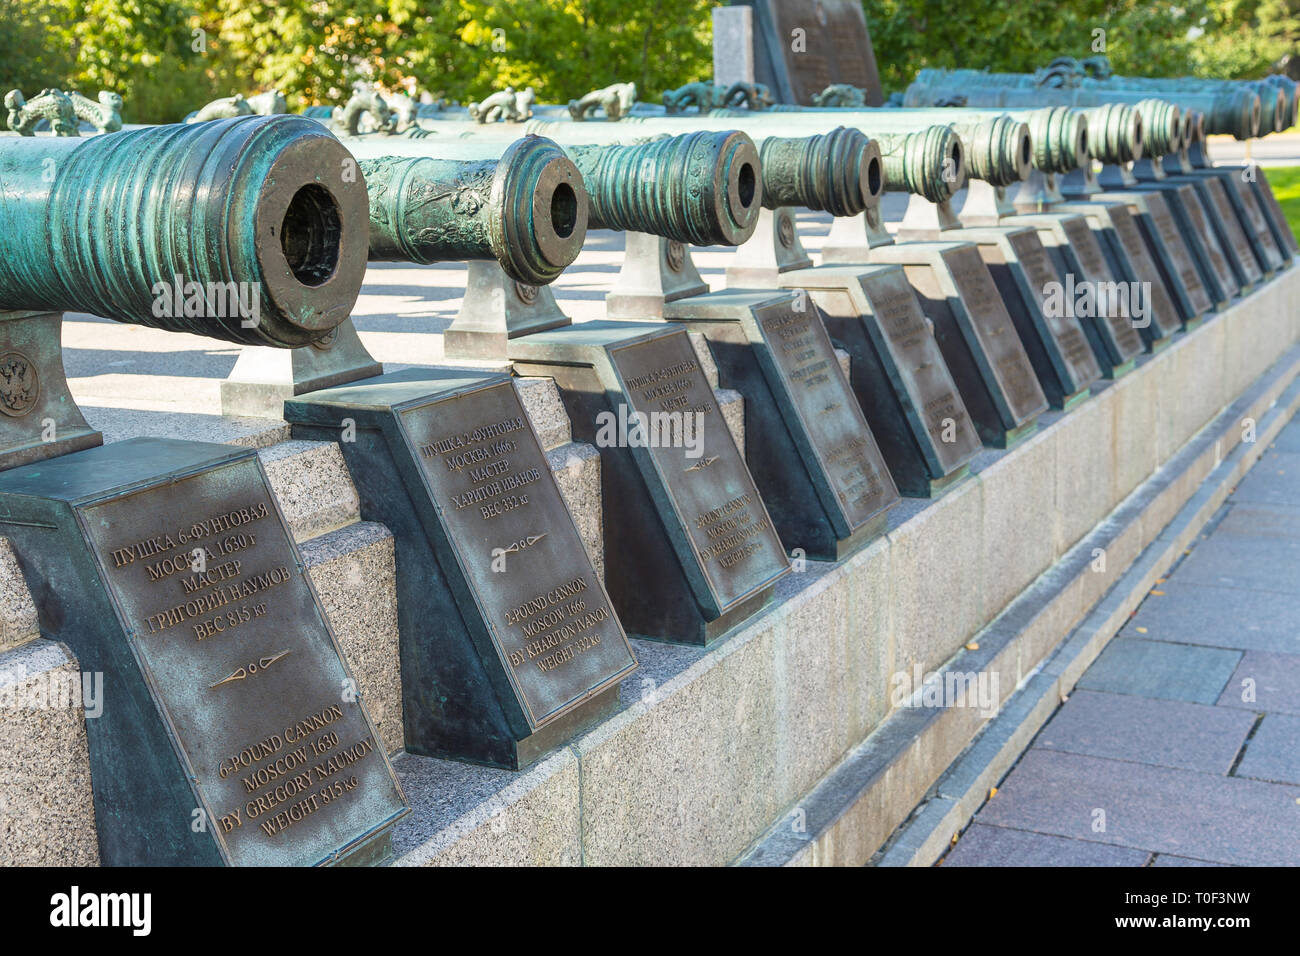 Moscou, Russie - 22 septembre 2014 : Voir des canons sur la Place Rouge, monument de l'artillerie russe. Musée du Kremlin de Moscou. Banque D'Images